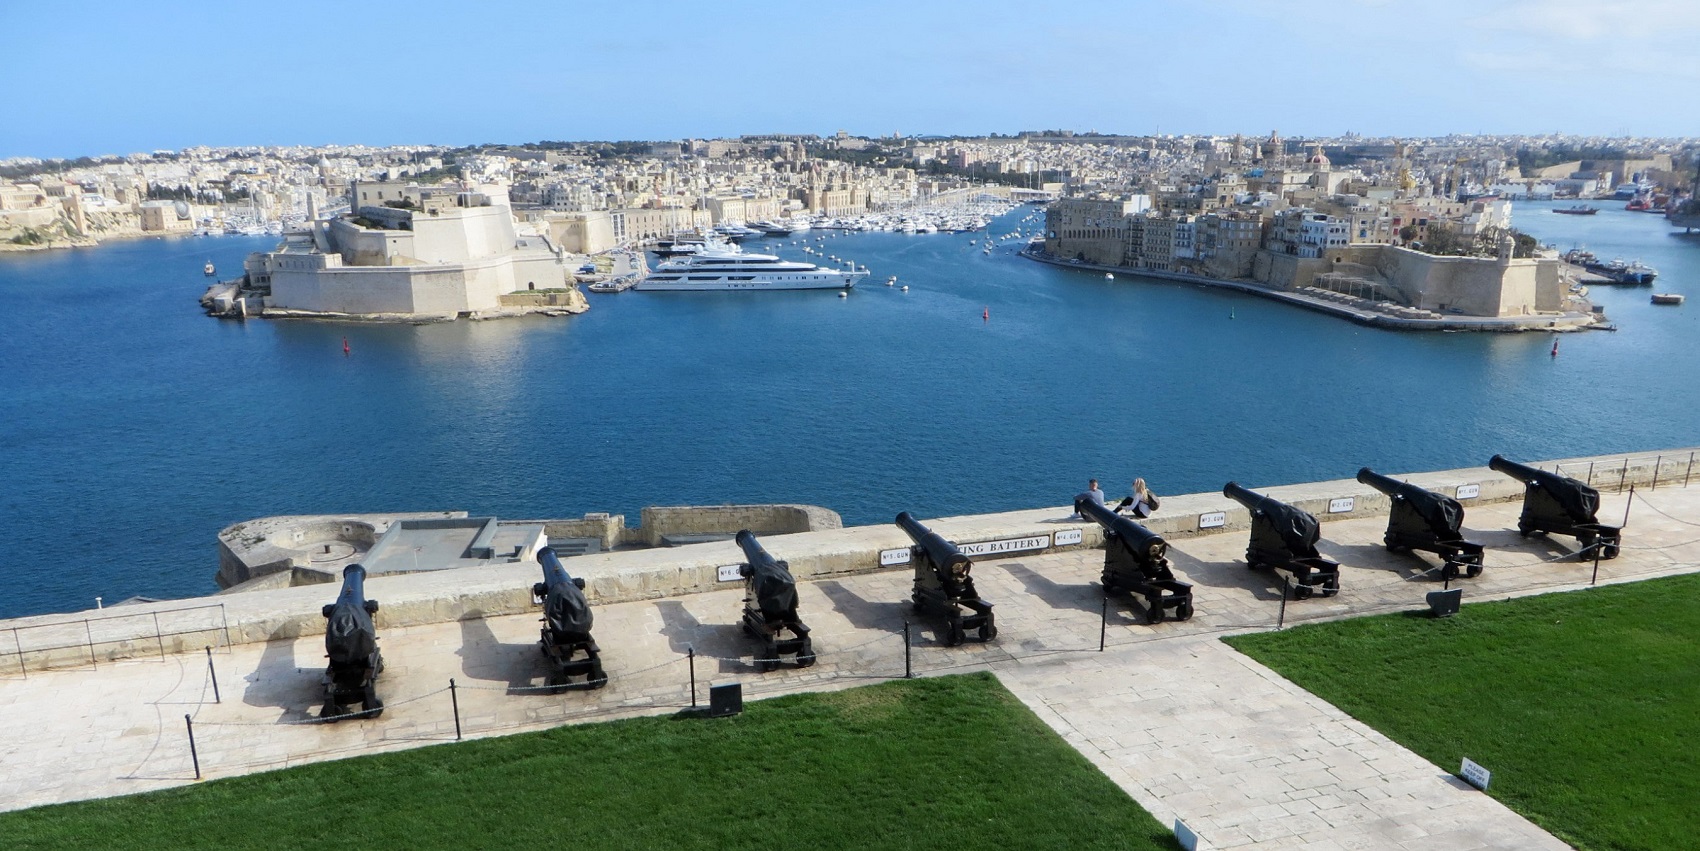 Malta Valletta & the three cities